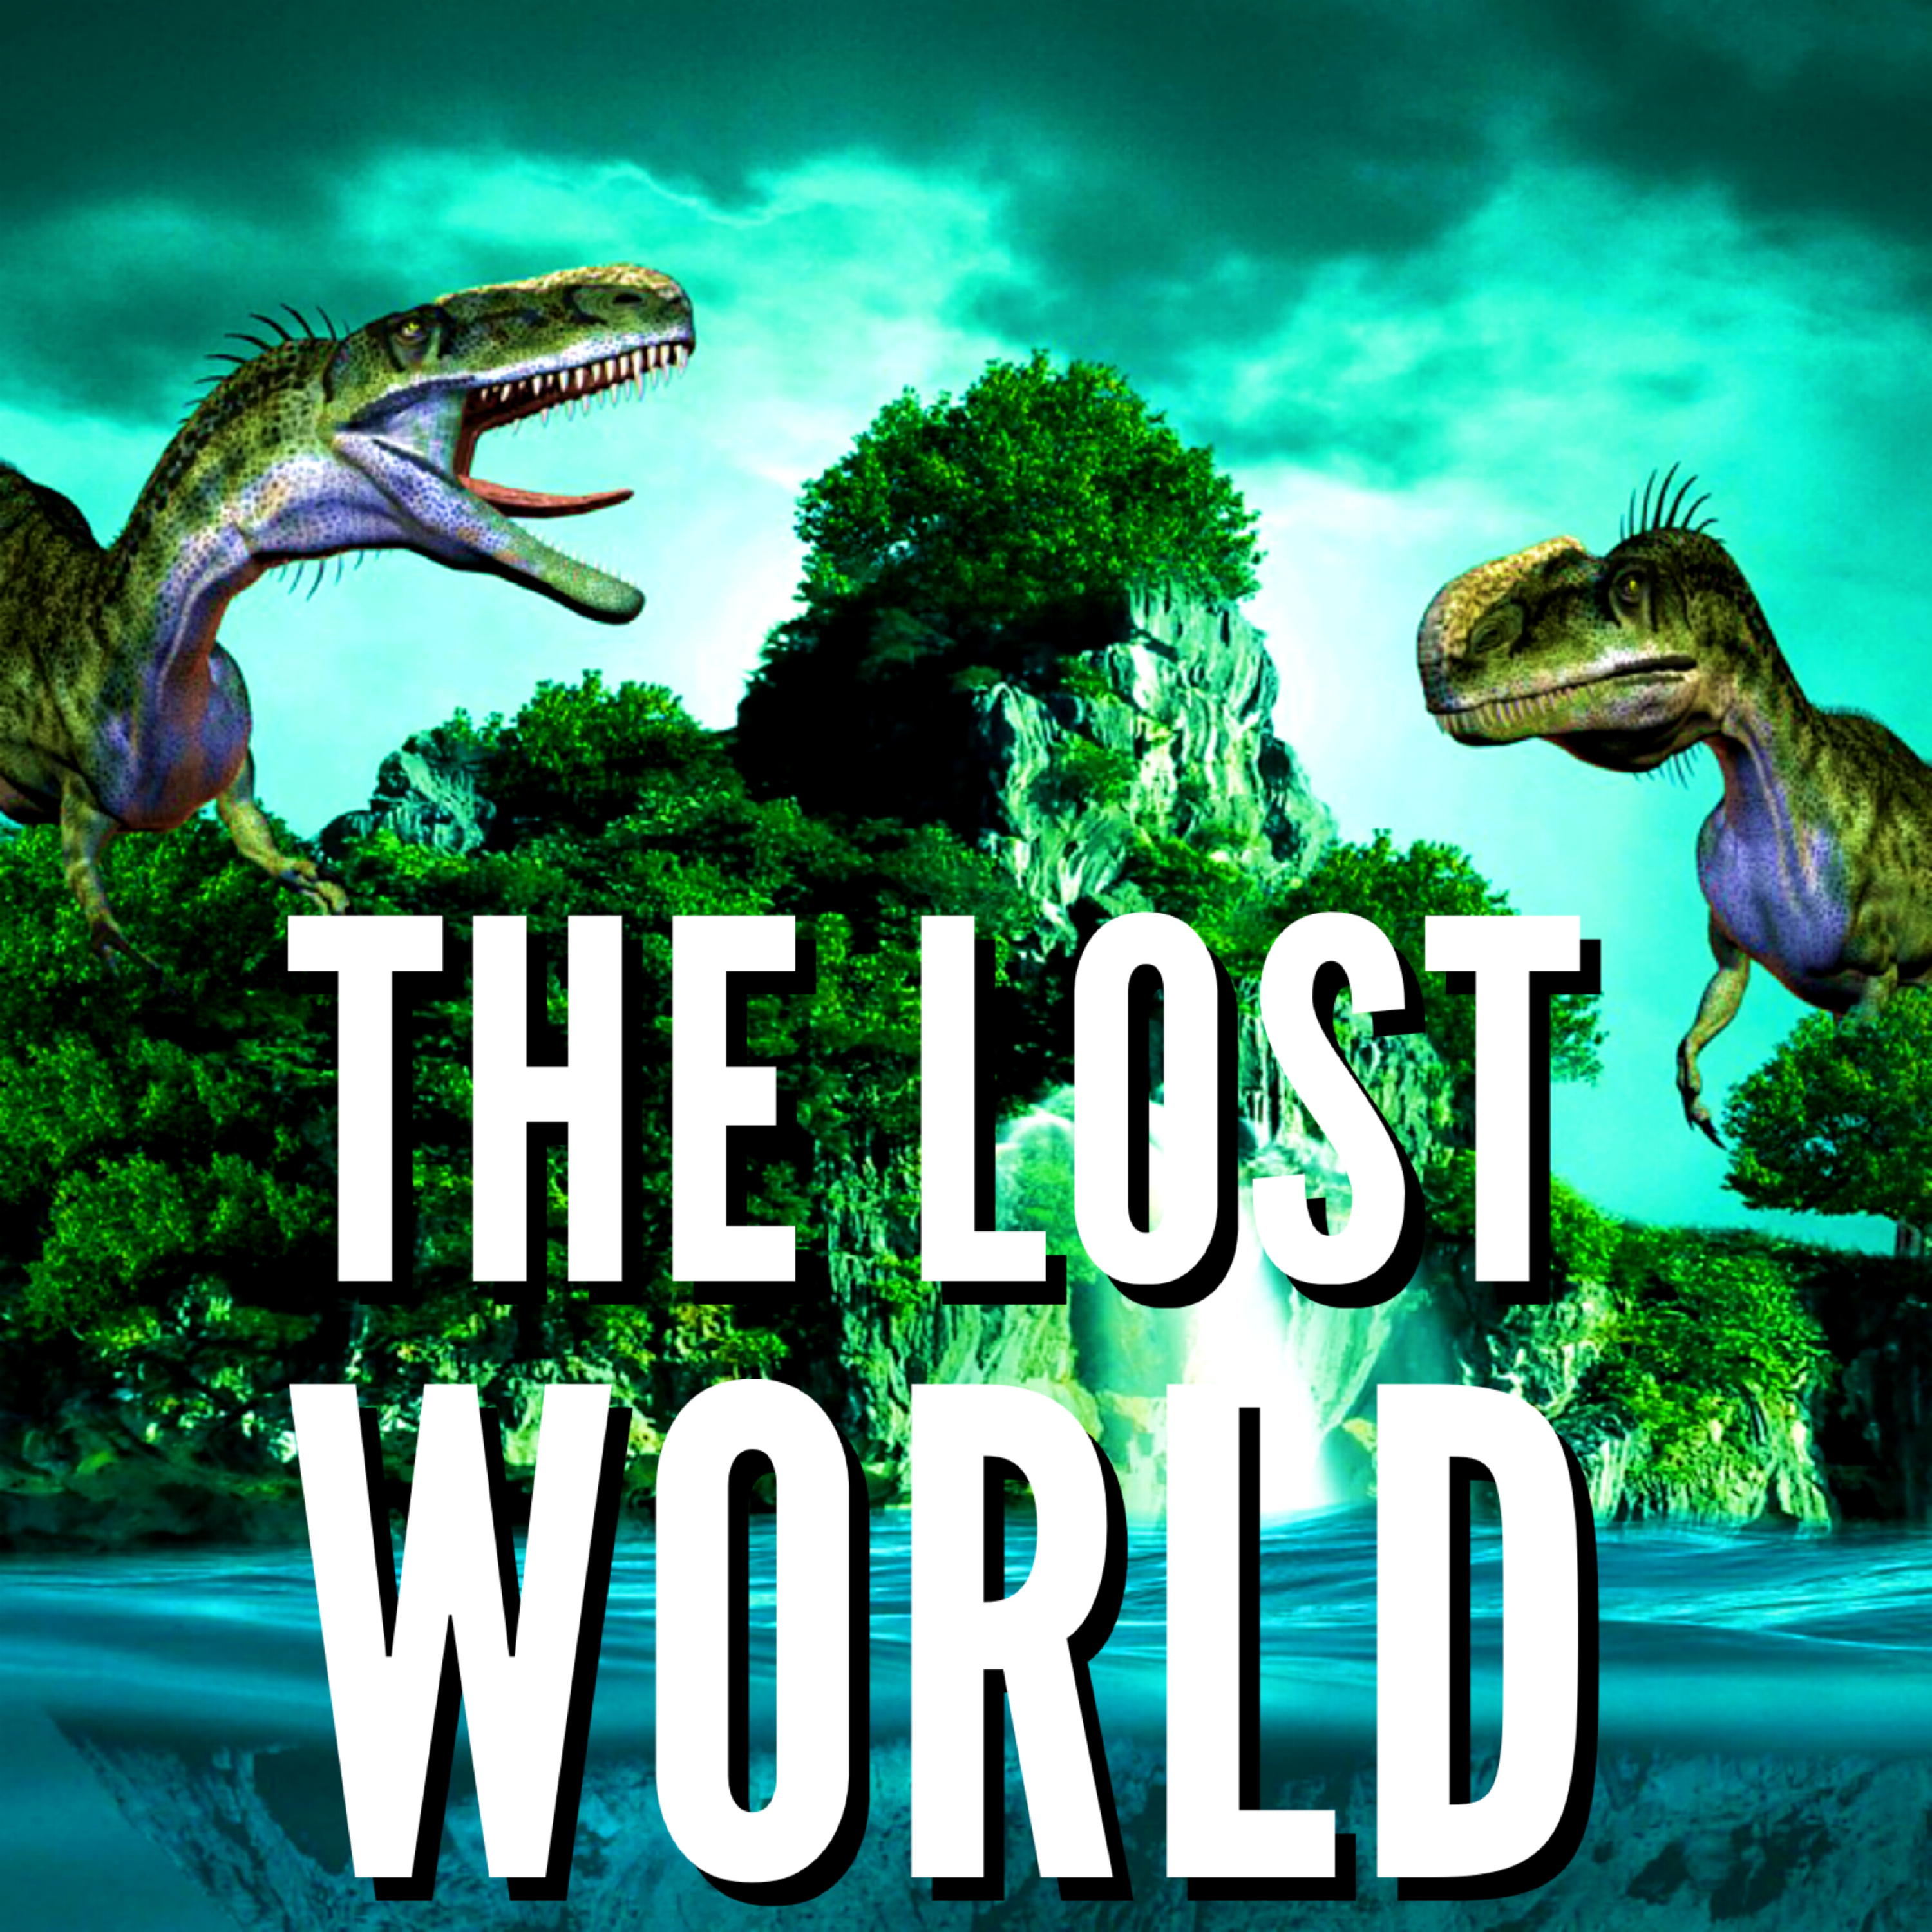 ASMR | (1) THE LOST WORLD by Sir Arthur Conan Doyle 1912